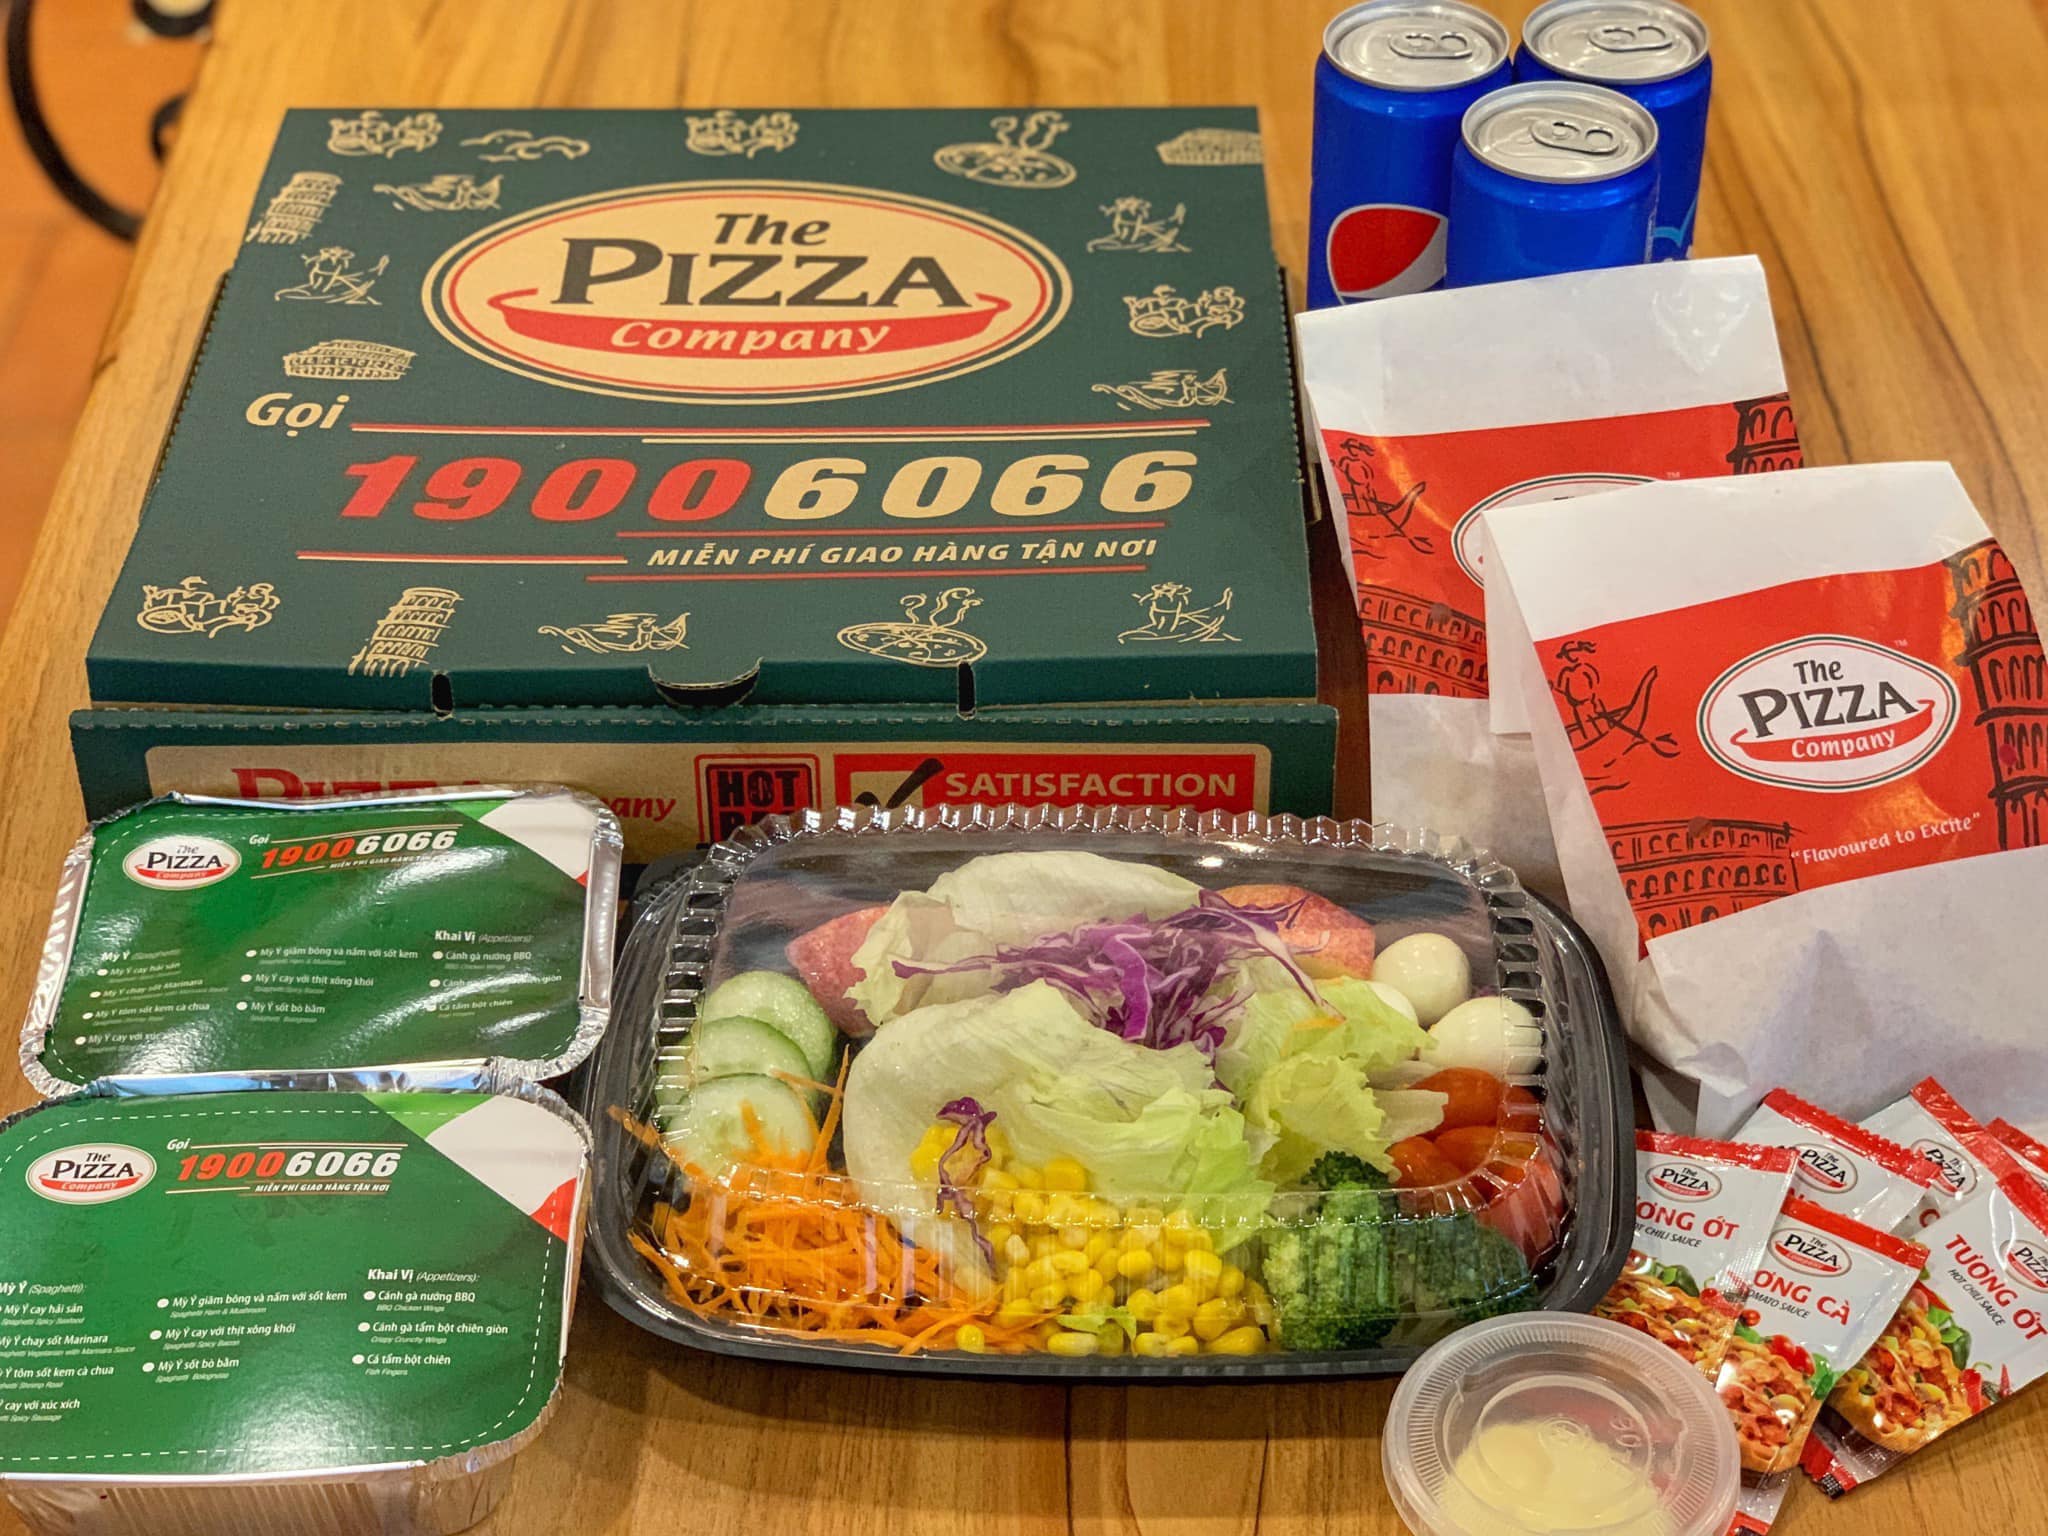 The Pizza Company Đoàn Trần Nghiệp